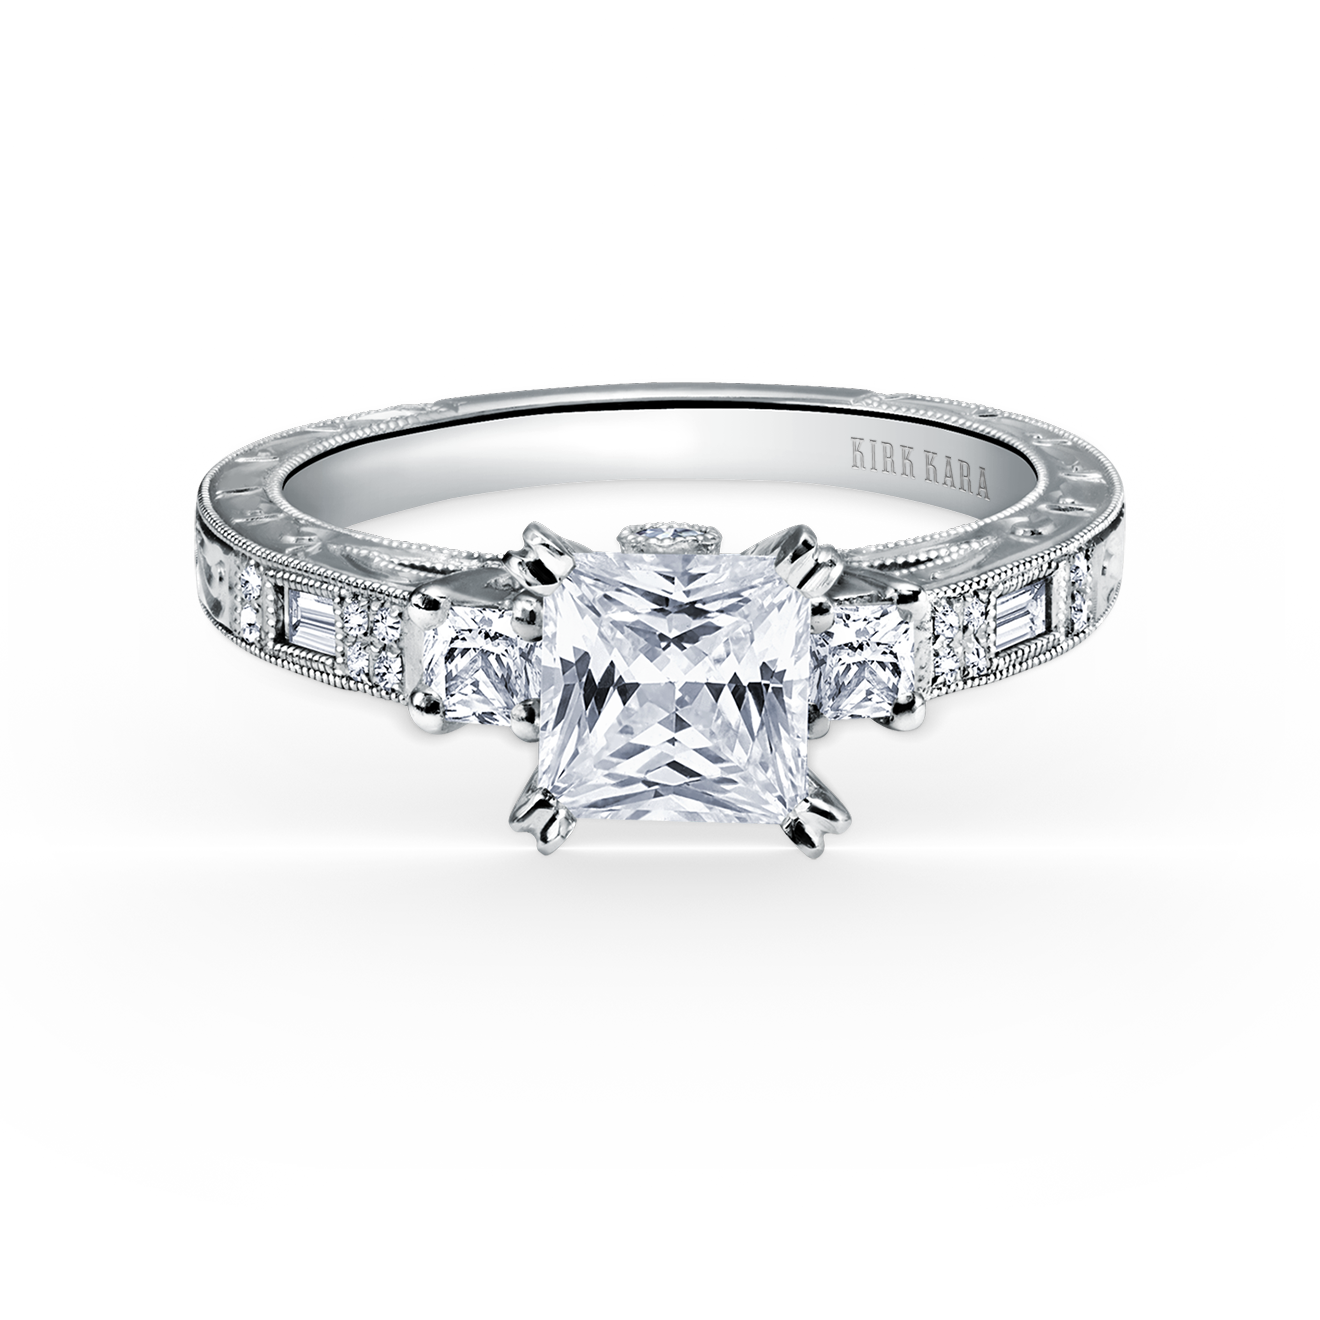 Kirk Kara Diamond Engagement Ring